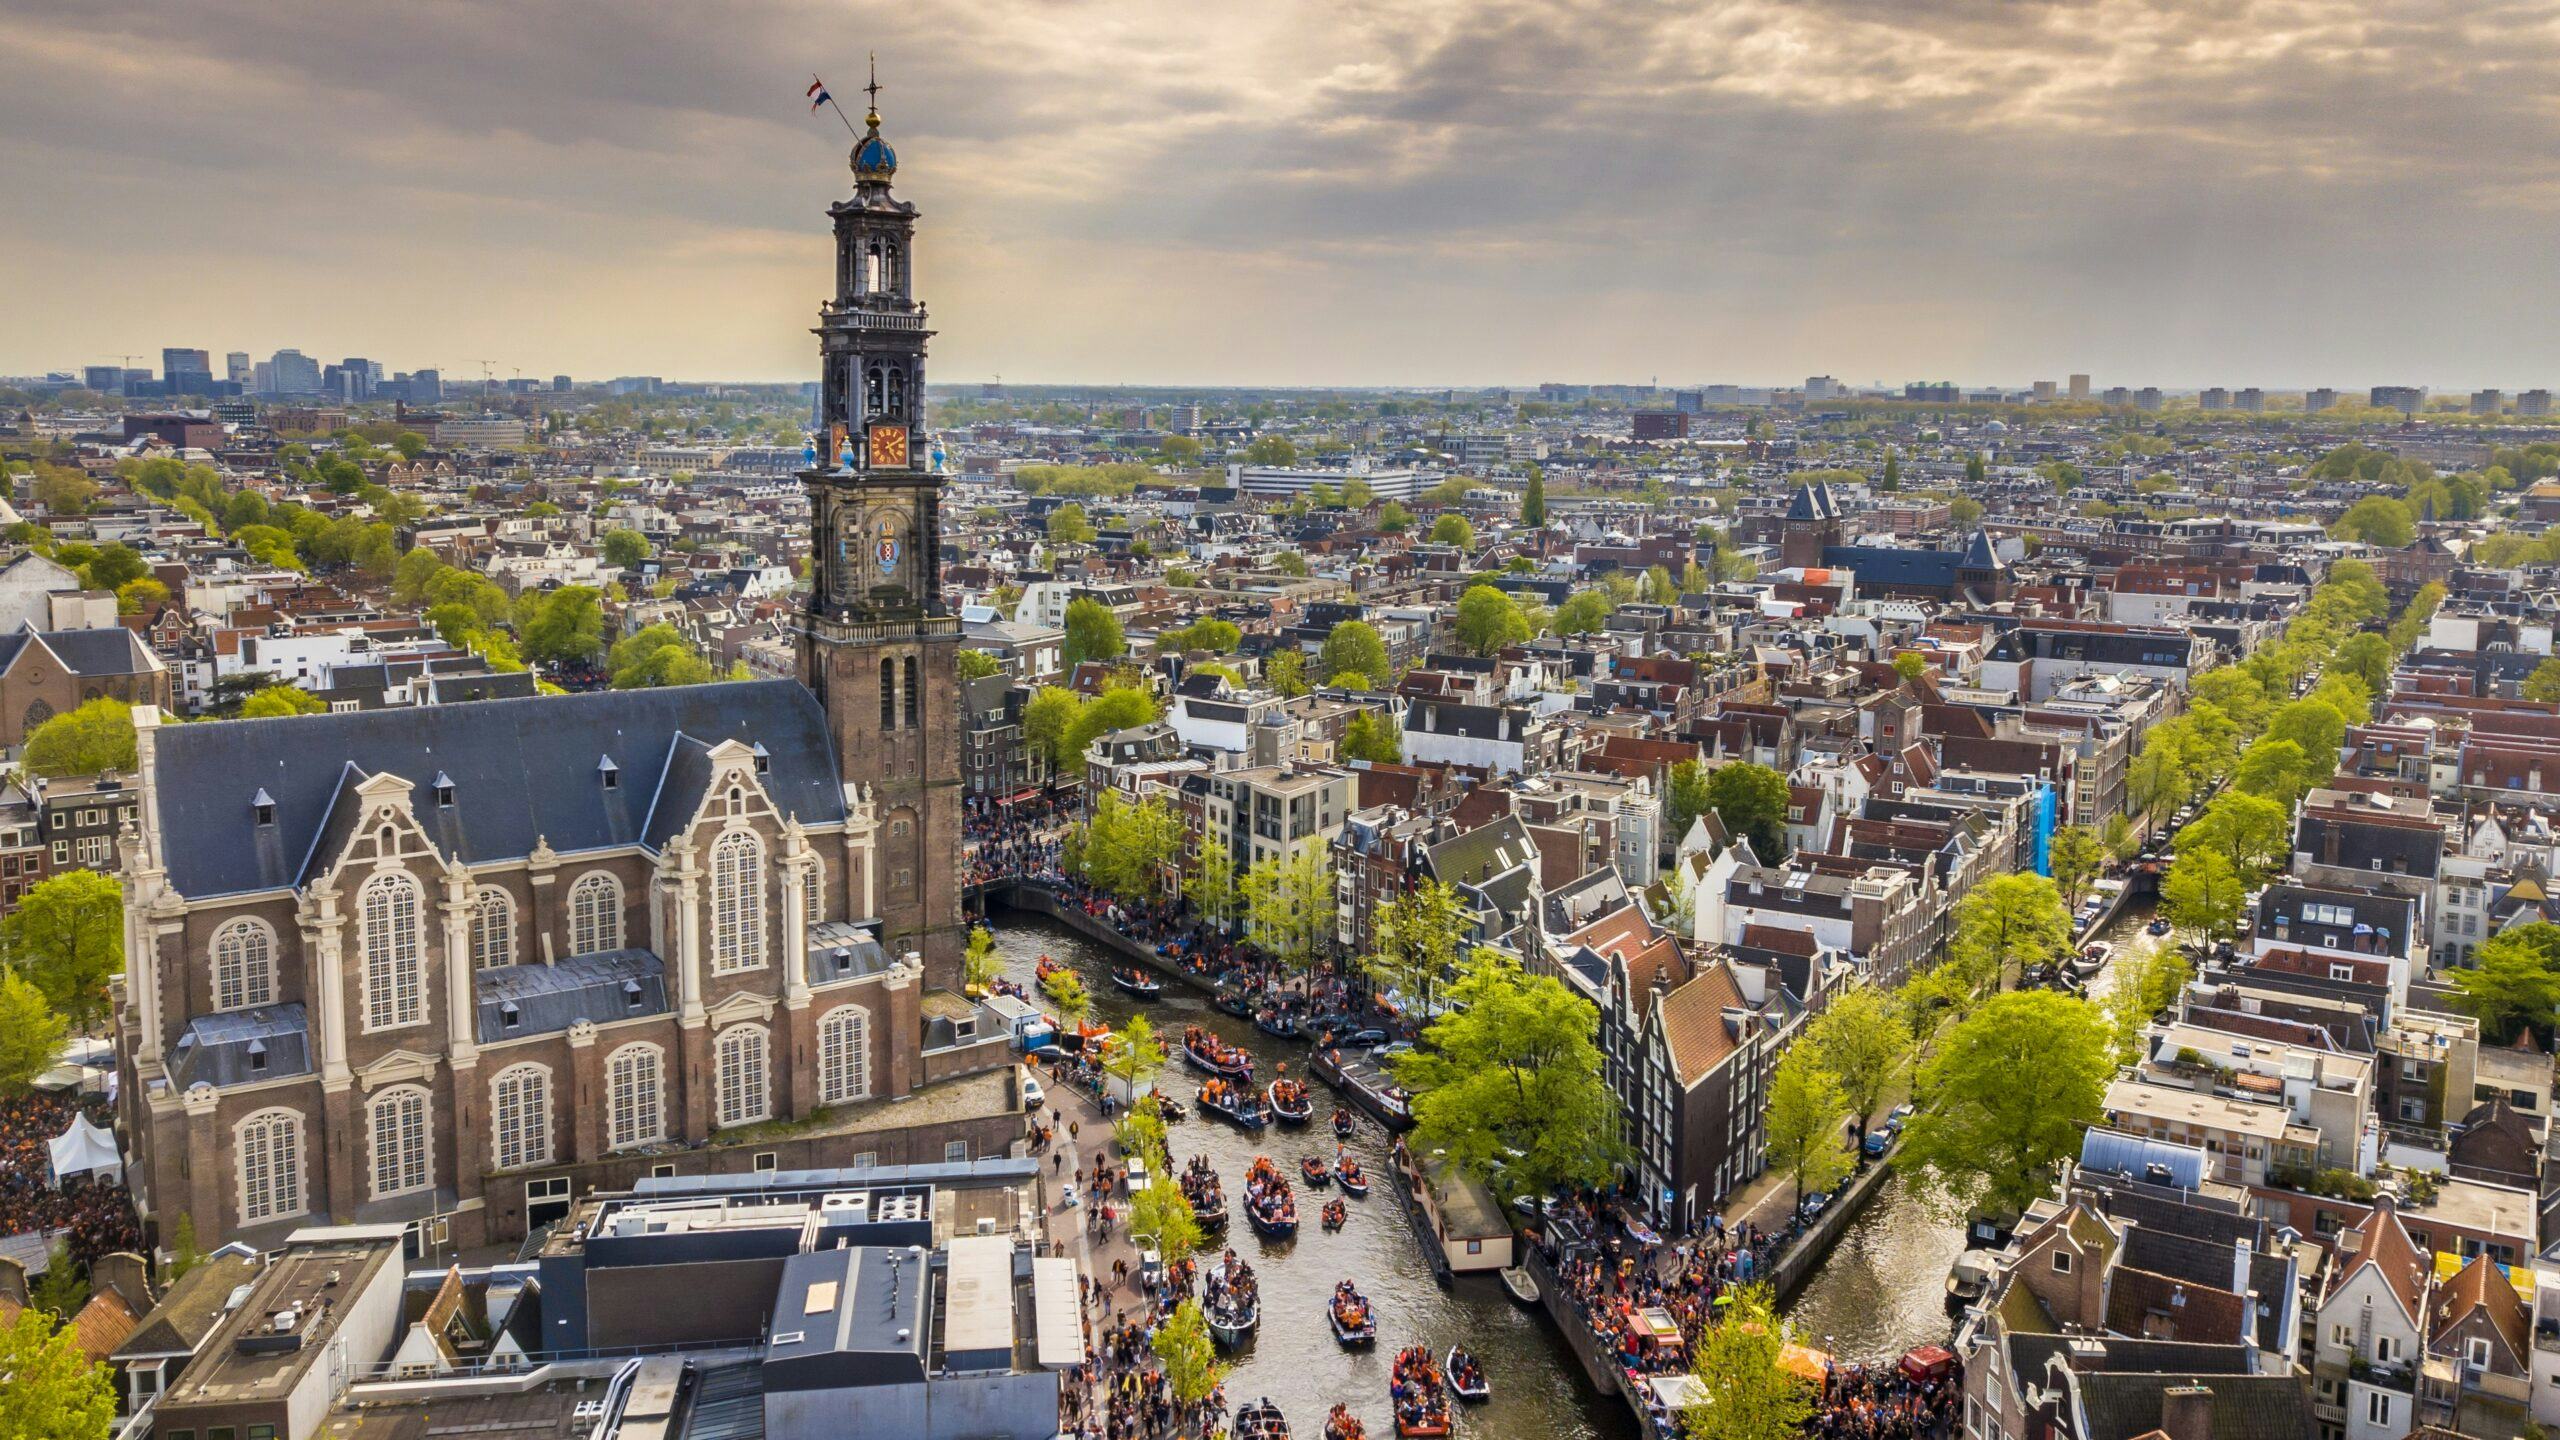 Amsterdamse makelaars schrijven het toenemende koopaanbod in de hoofdstad duidelijk toe aan uitpondende beleggers.